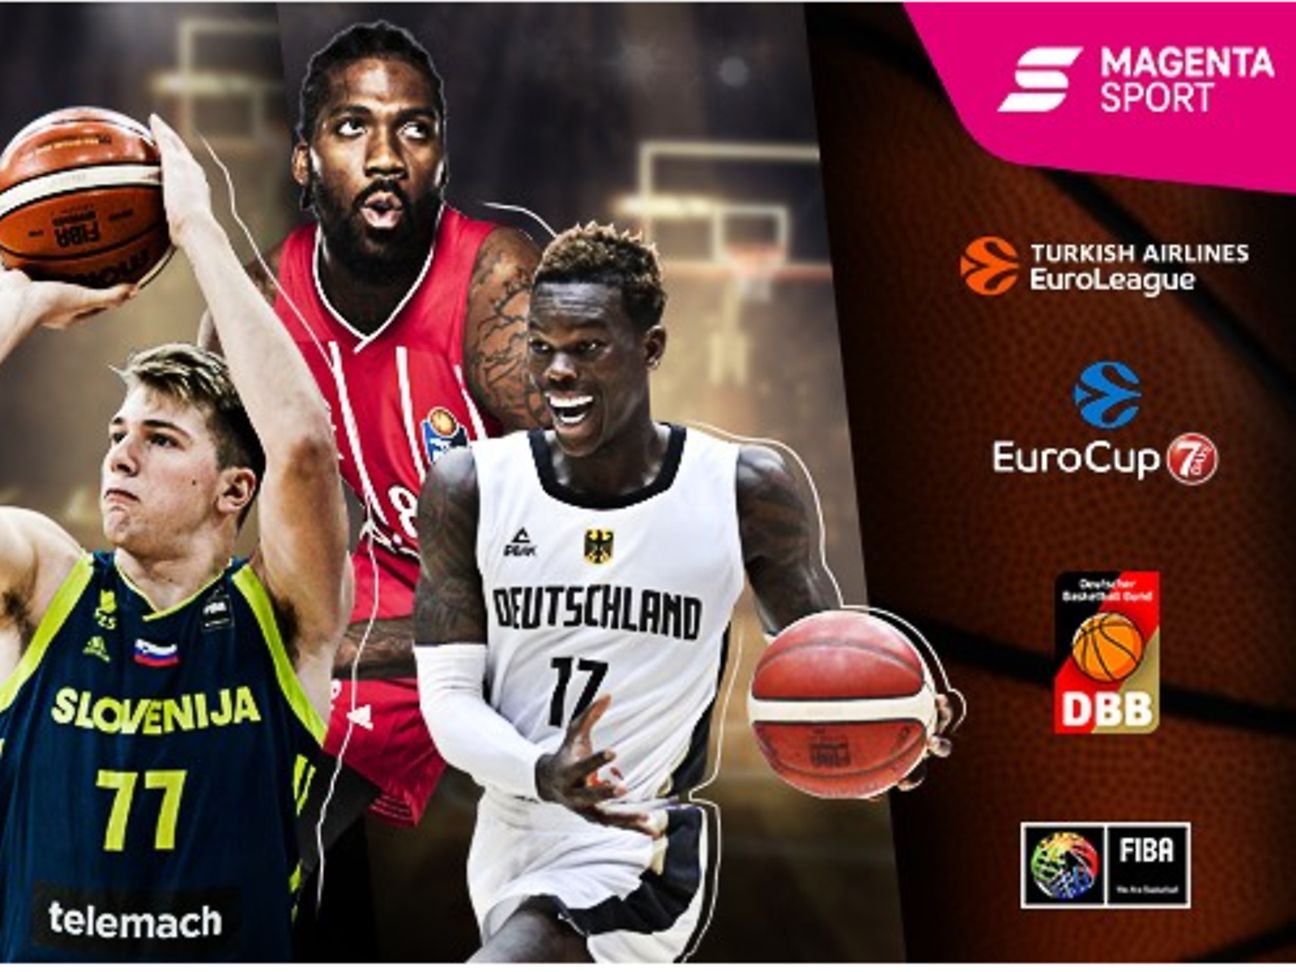 MagentaSport sichert sich langfristig WM-, EM- und Euro-League Medienrechte im Basketball Deutsche Telekom